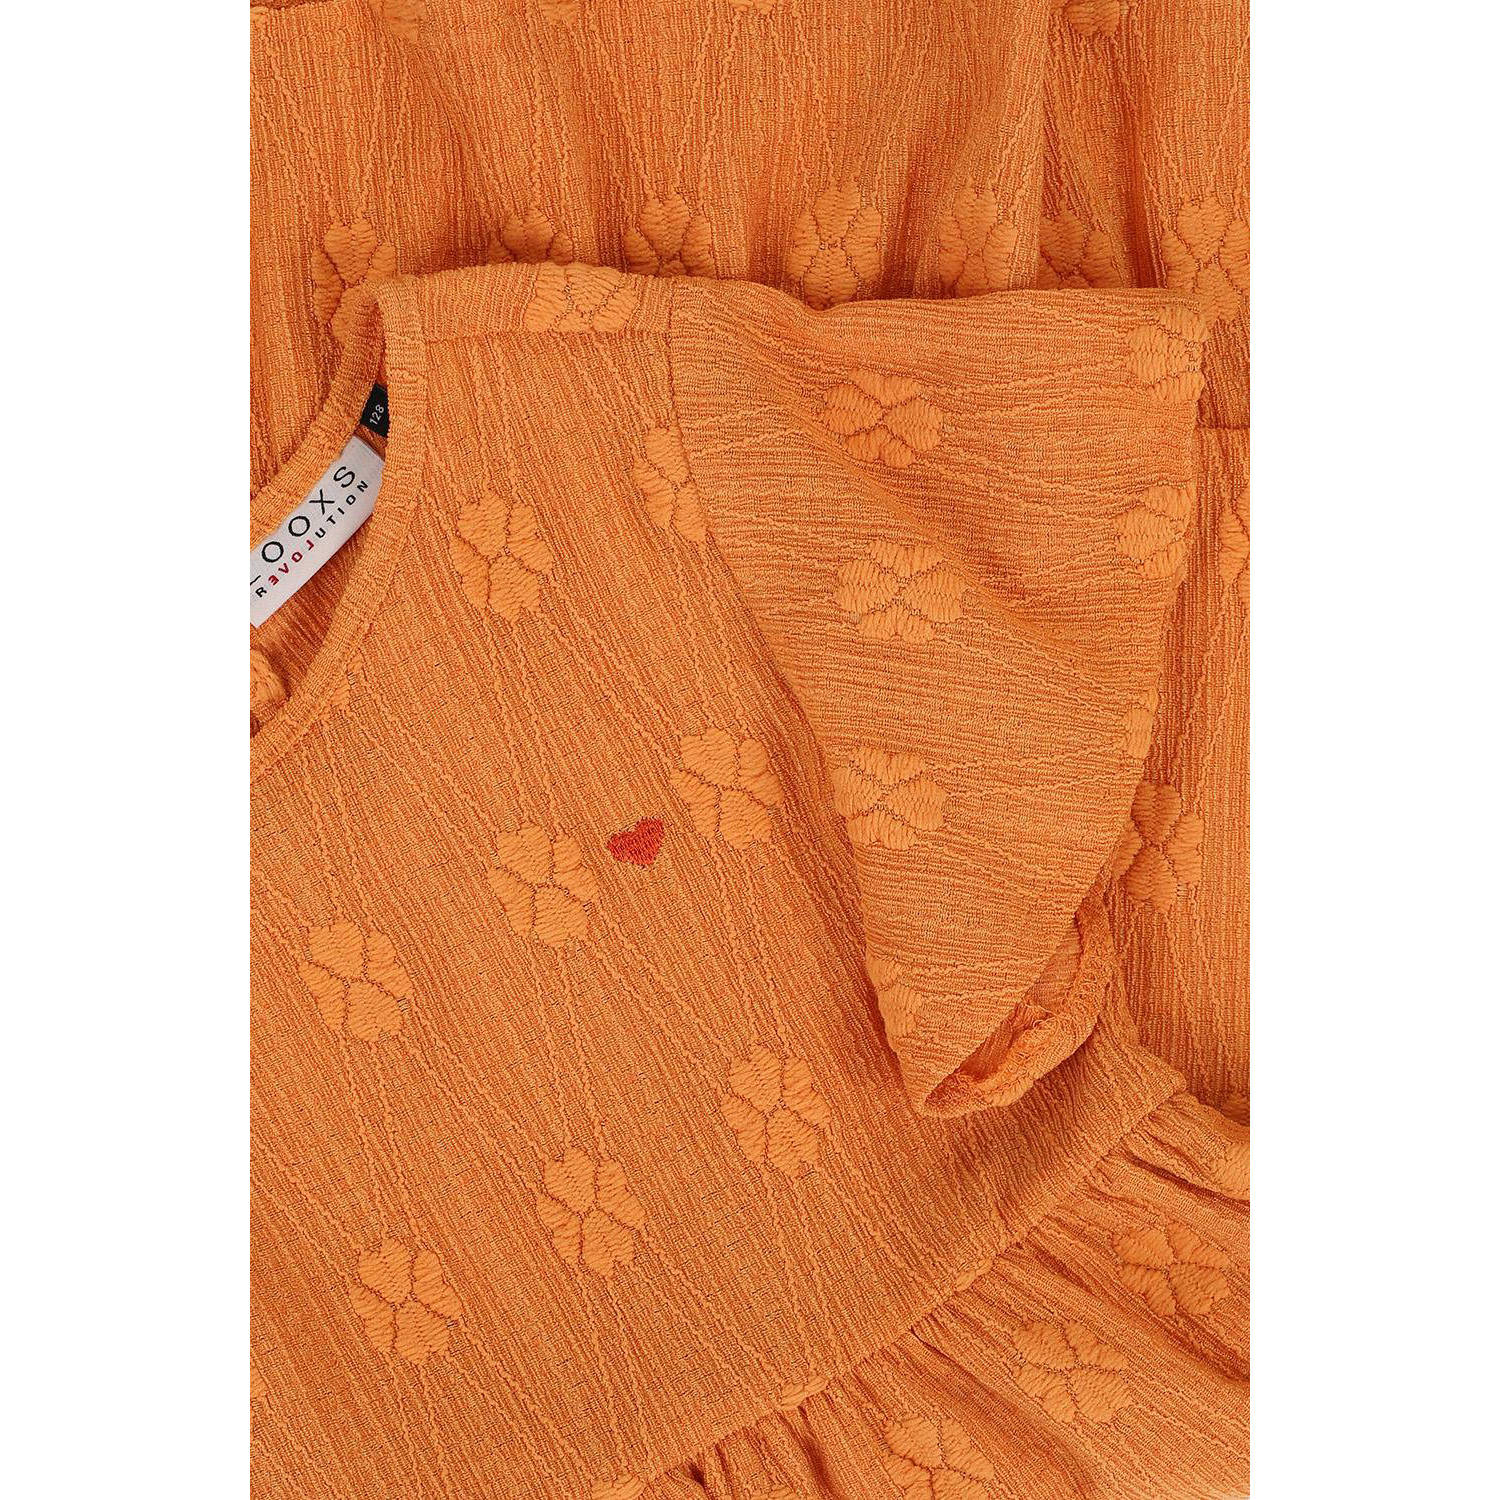 LOOXS little jurk met all over print en volant oranje